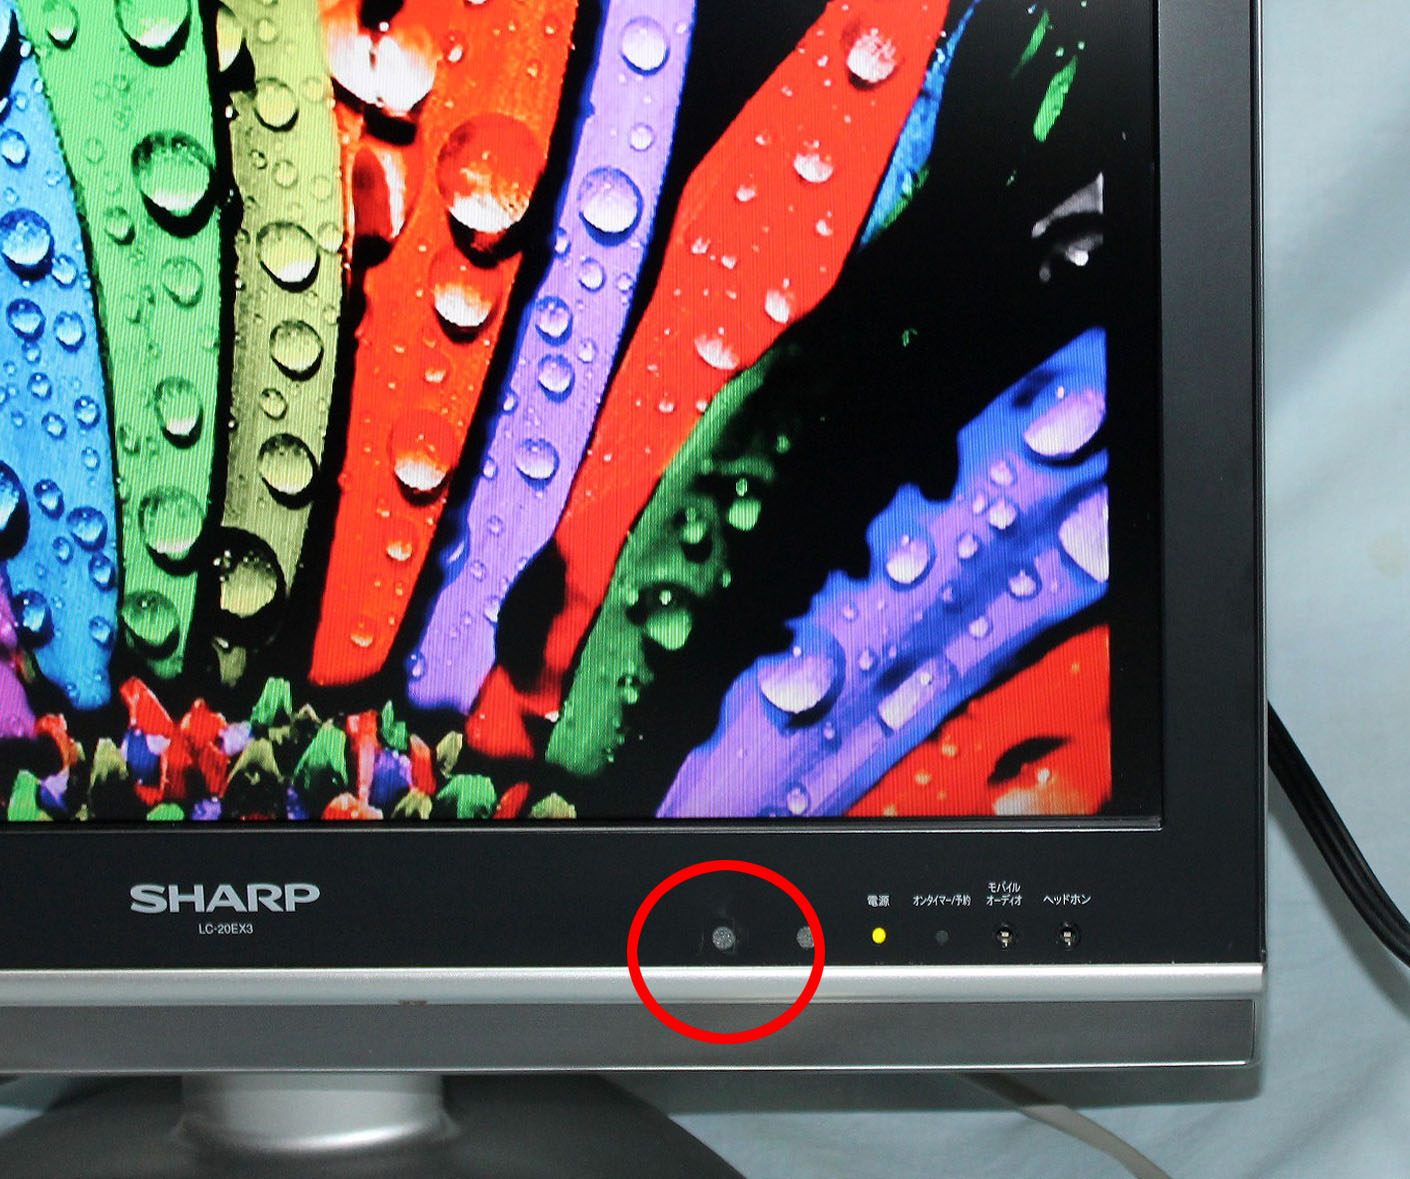 22000☆シャープ20型液晶テレビ LC-20EX3 シャープ AQUOS 2008年製